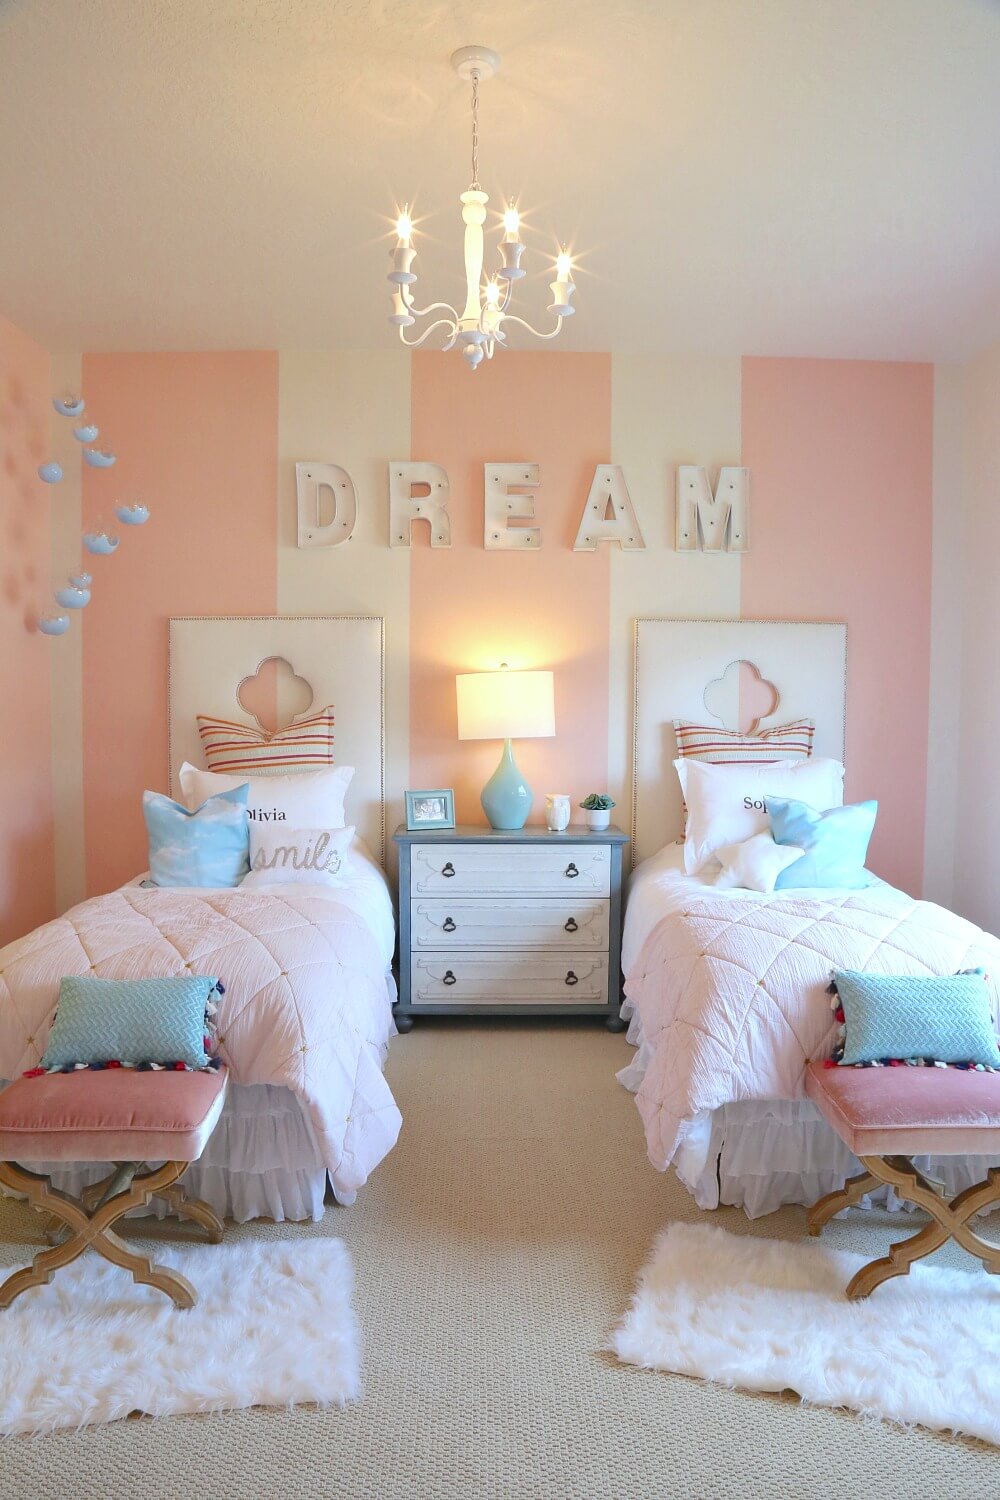 23+] Mẫu phòng ngủ bé gái màu hồng cực đáng yêu: Với màu hồng nhẹ nhàng, lãng mạn và đáng yêu, phòng ngủ bé gái màu hồng chính là nơi cực kỳ thú vị và đáng yêu để các bé thỏa sức chiến đấu với thế giới của mình. Thiết kế tinh tế, đáng yêu và tiện nghi giúp các bé cảm thấy thoải mái và vui tươi trong căn phòng của mình.